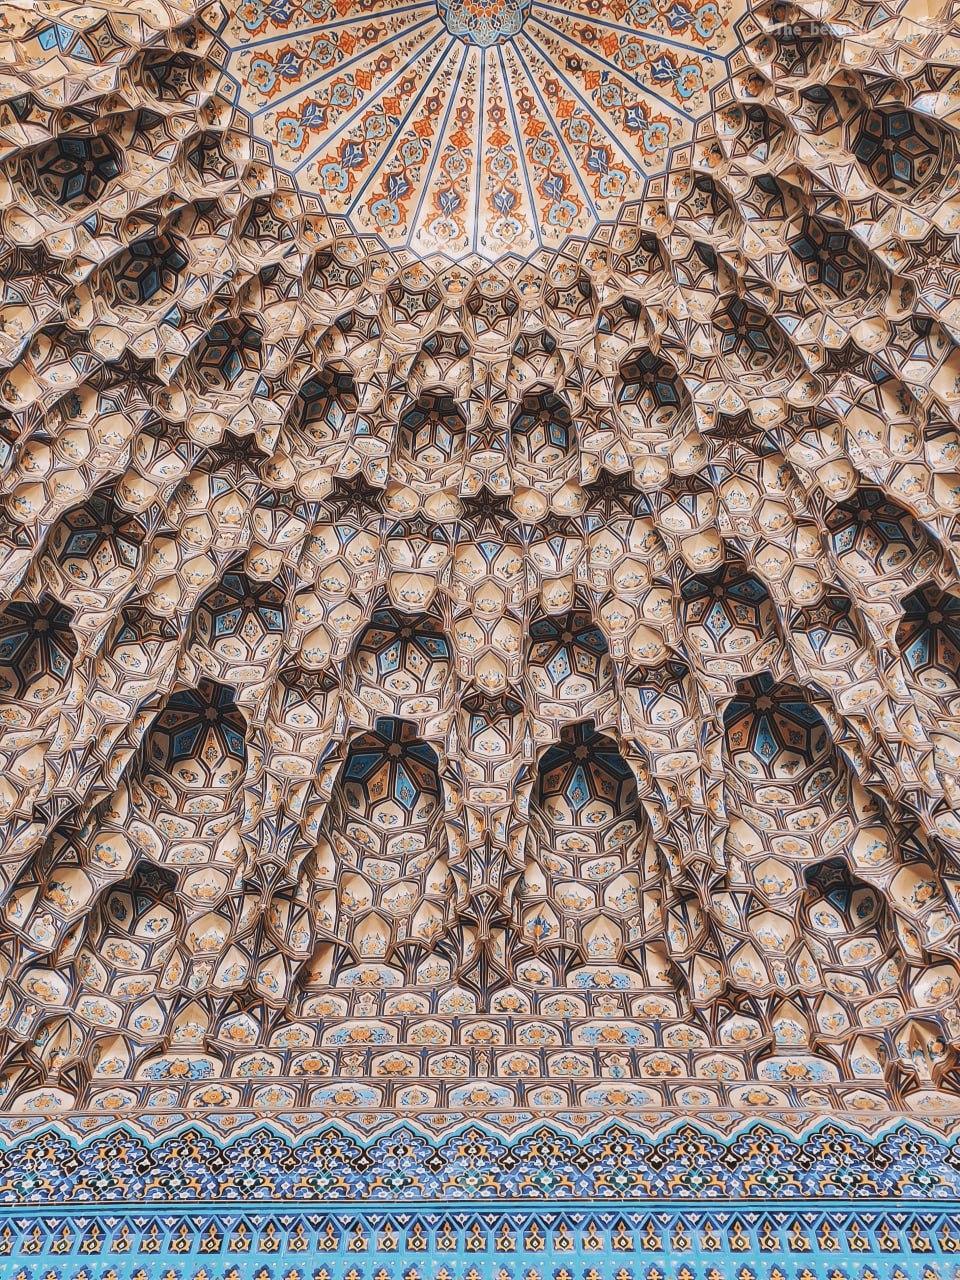 تلفیقی از شکوه و زیبایی در مسجد گوهرشاد مشهد